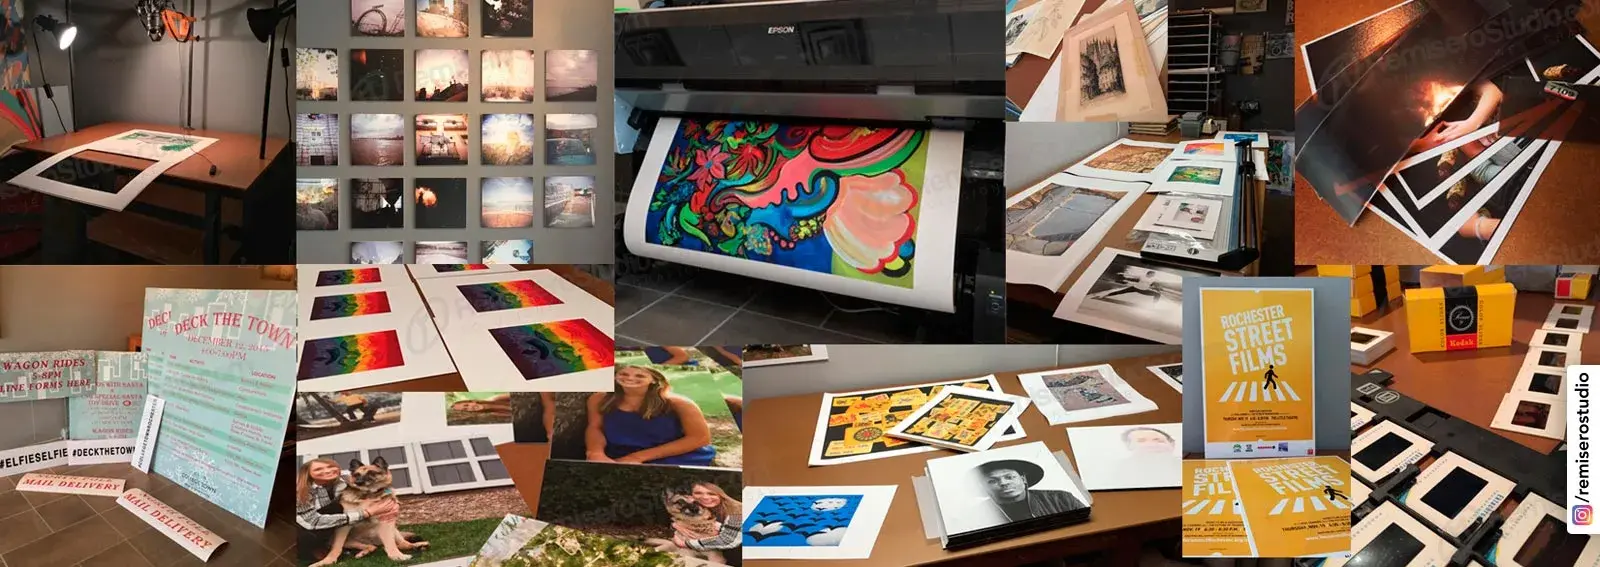 Impresión Inkjet en Lima, Perú: Impresión digital en Papel Fotográfico, Perlado, Backlite, Lienzo canvas, Tamaños A2, A1, A0